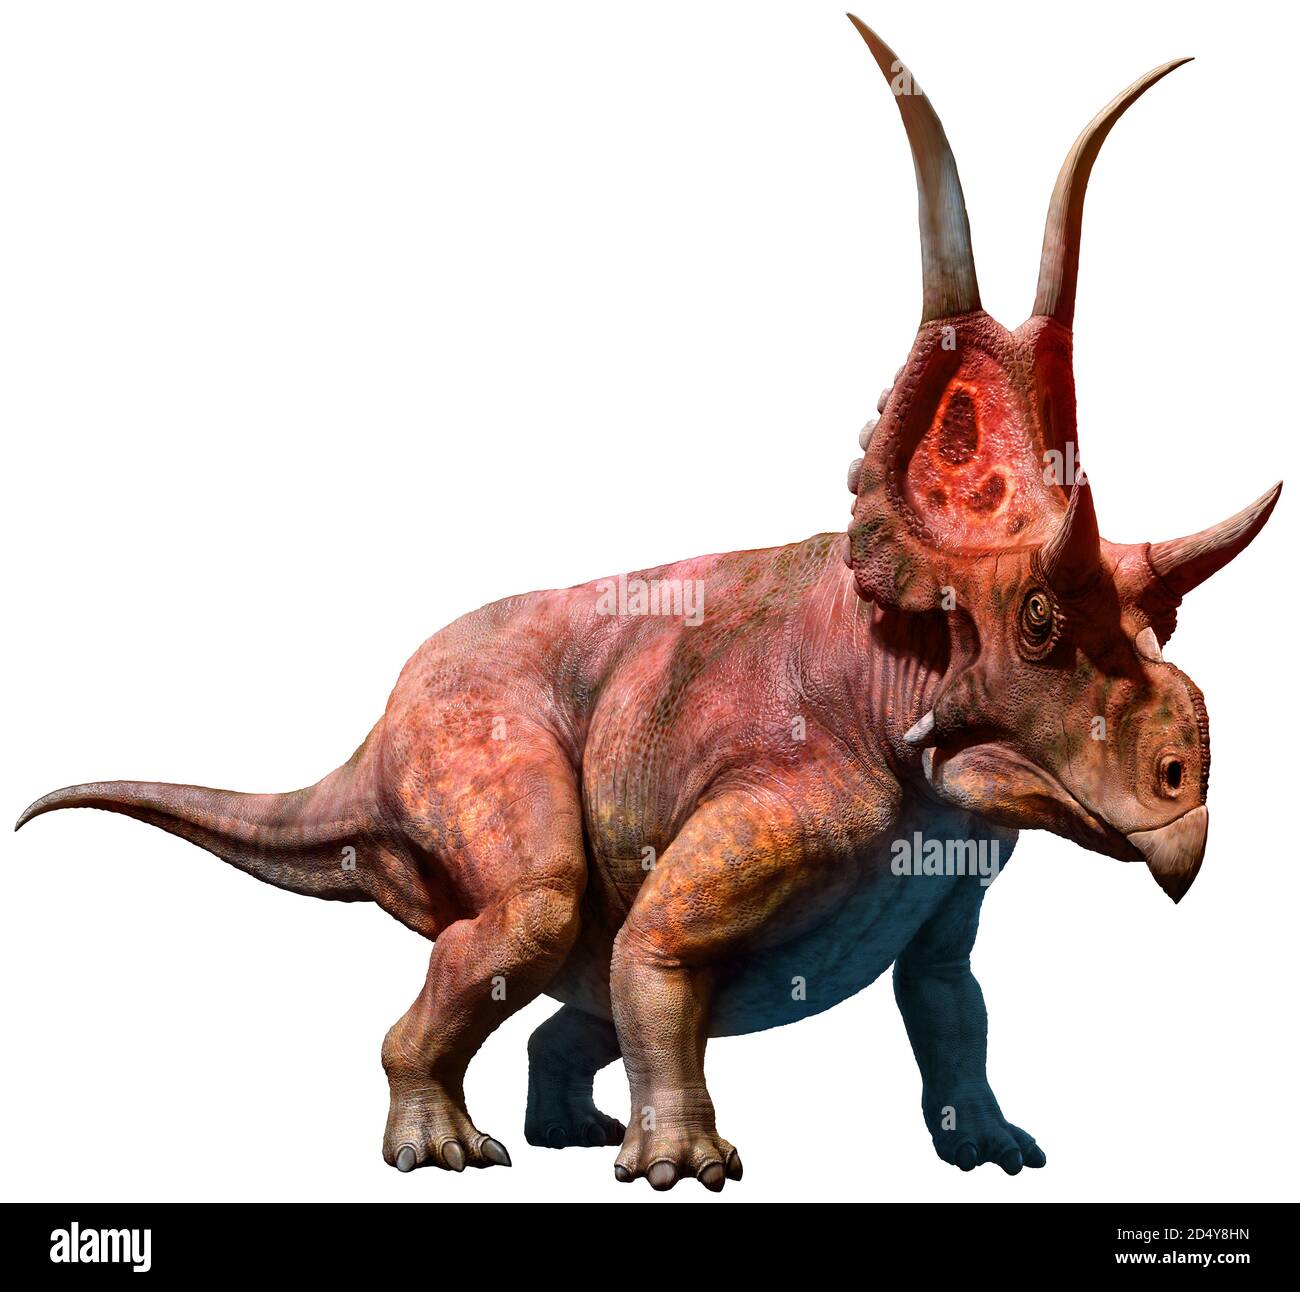 Dinosaure : 340 890 images, photos de stock, objets 3D et images